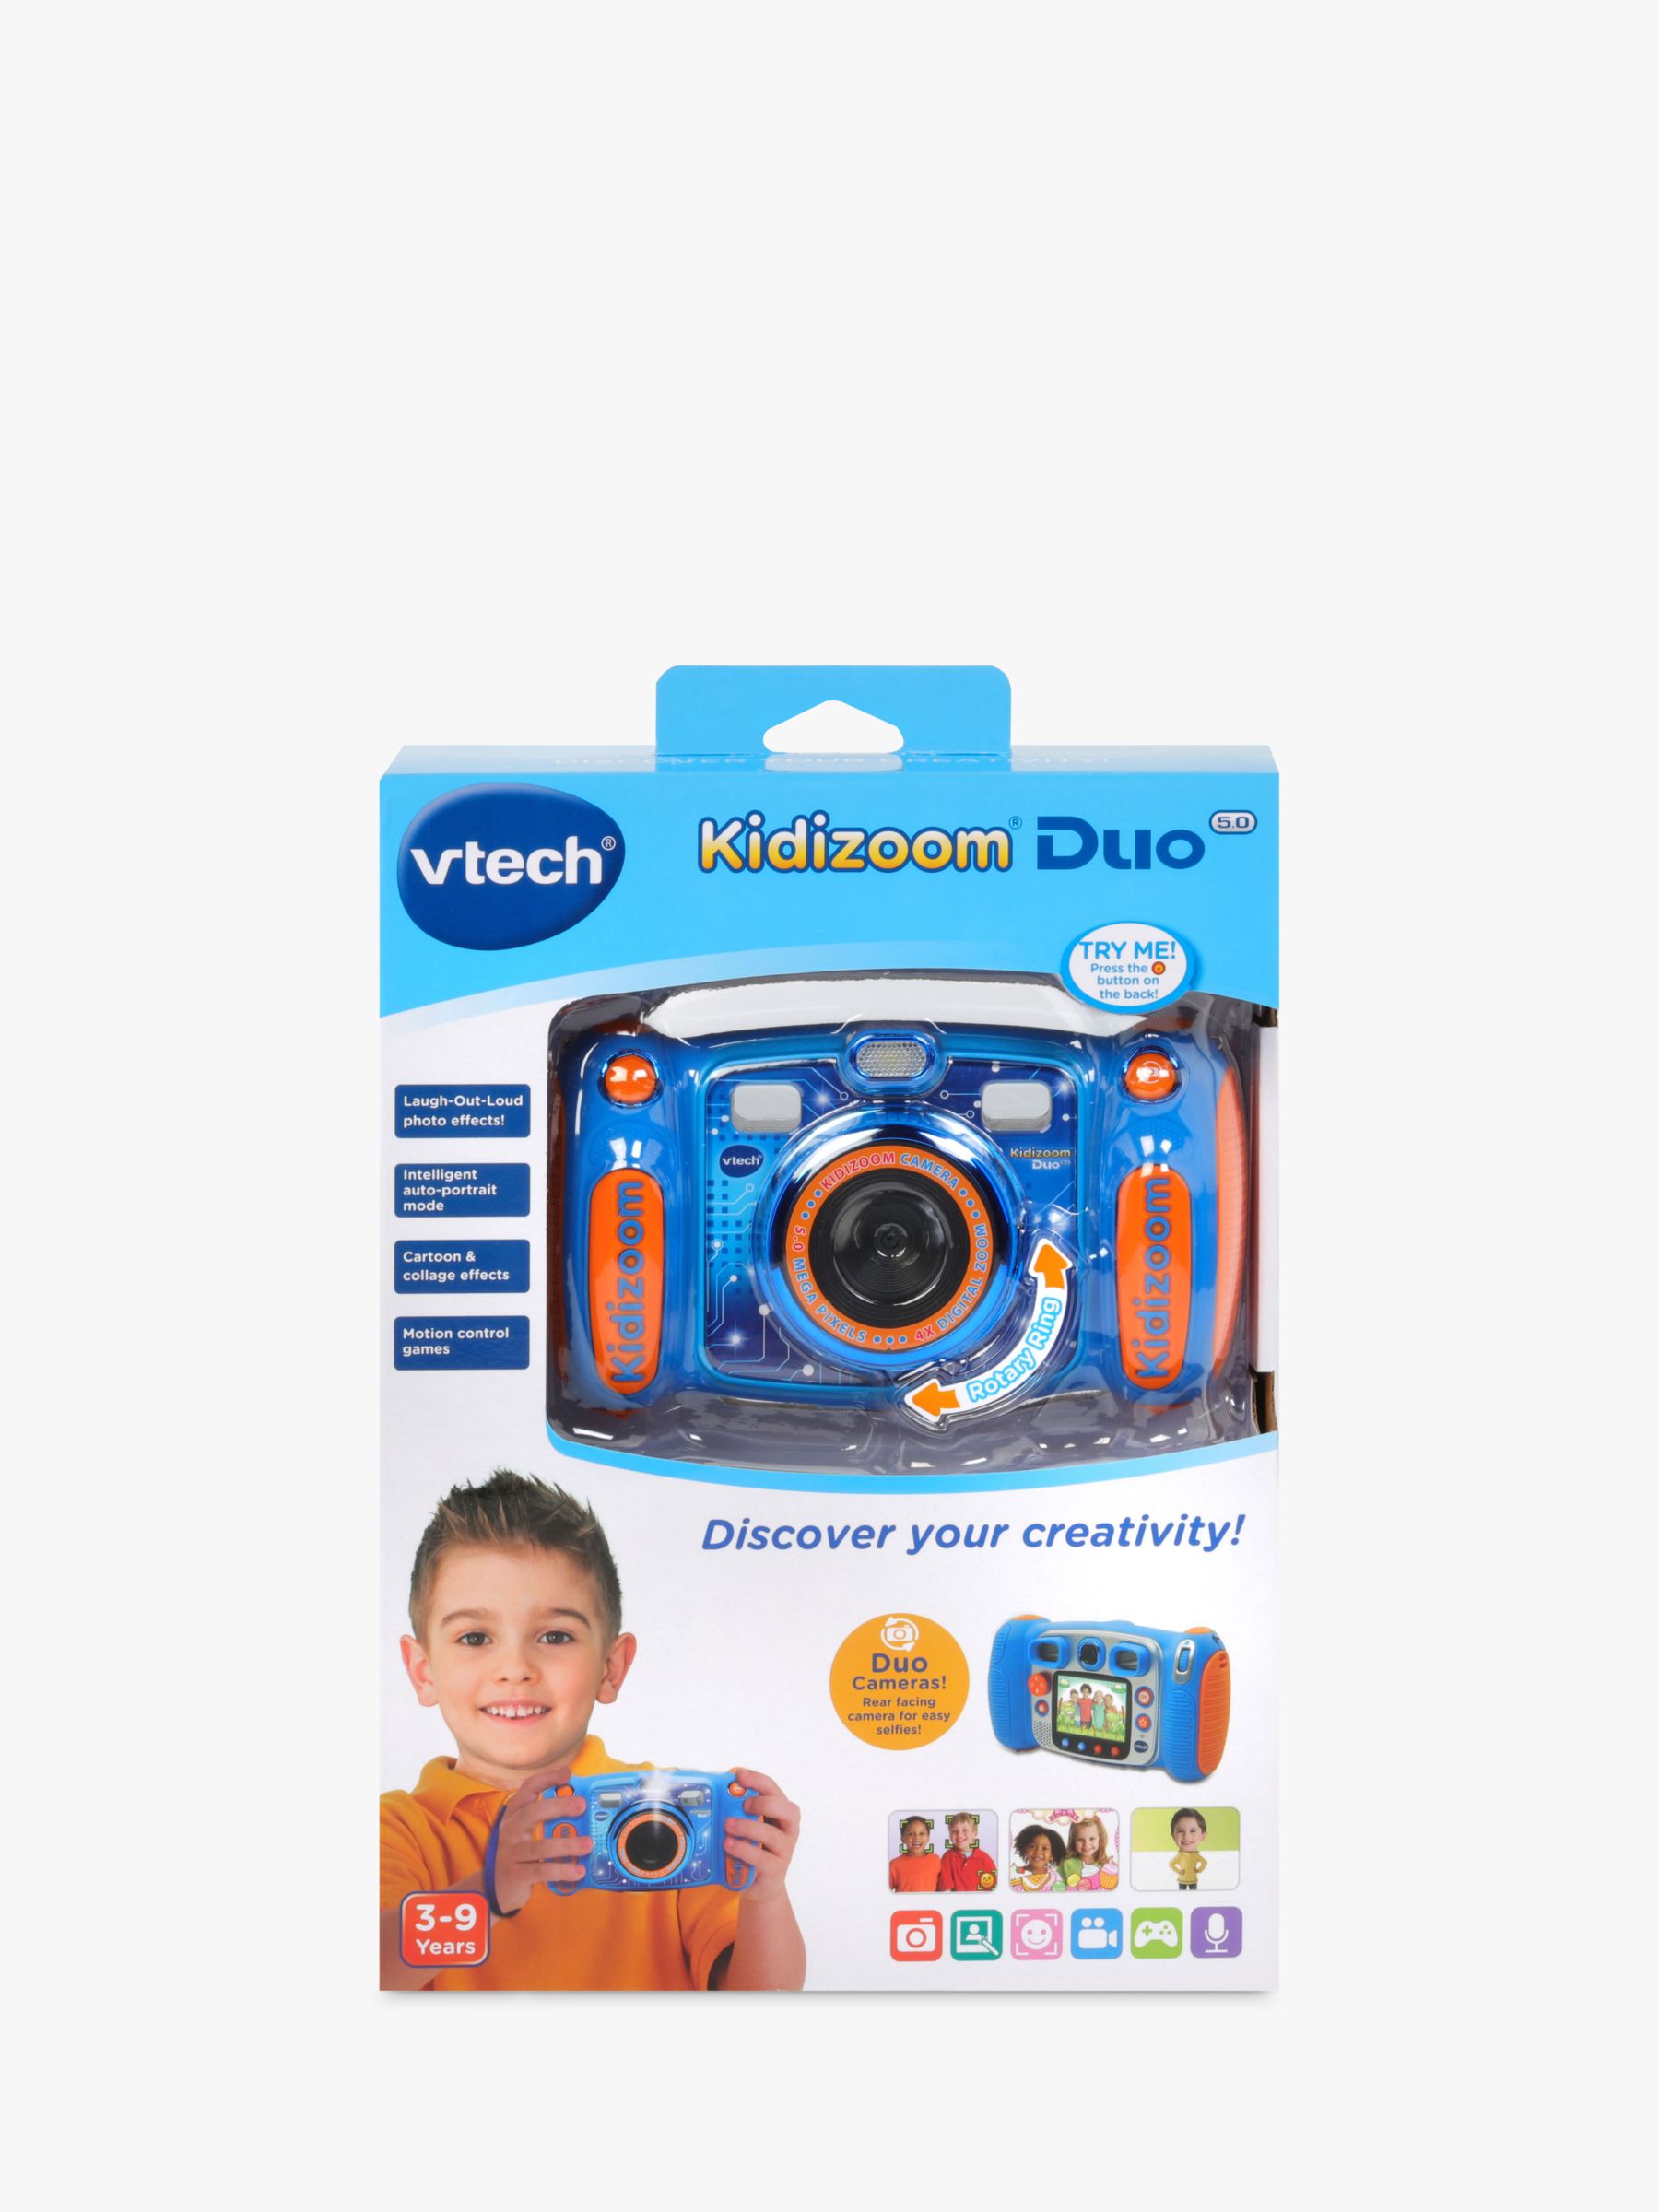 gebouw Armstrong Uitreiken VTech Kidizoom 5.0 Megapixel Duo Children's Camera with 4GB SD Card